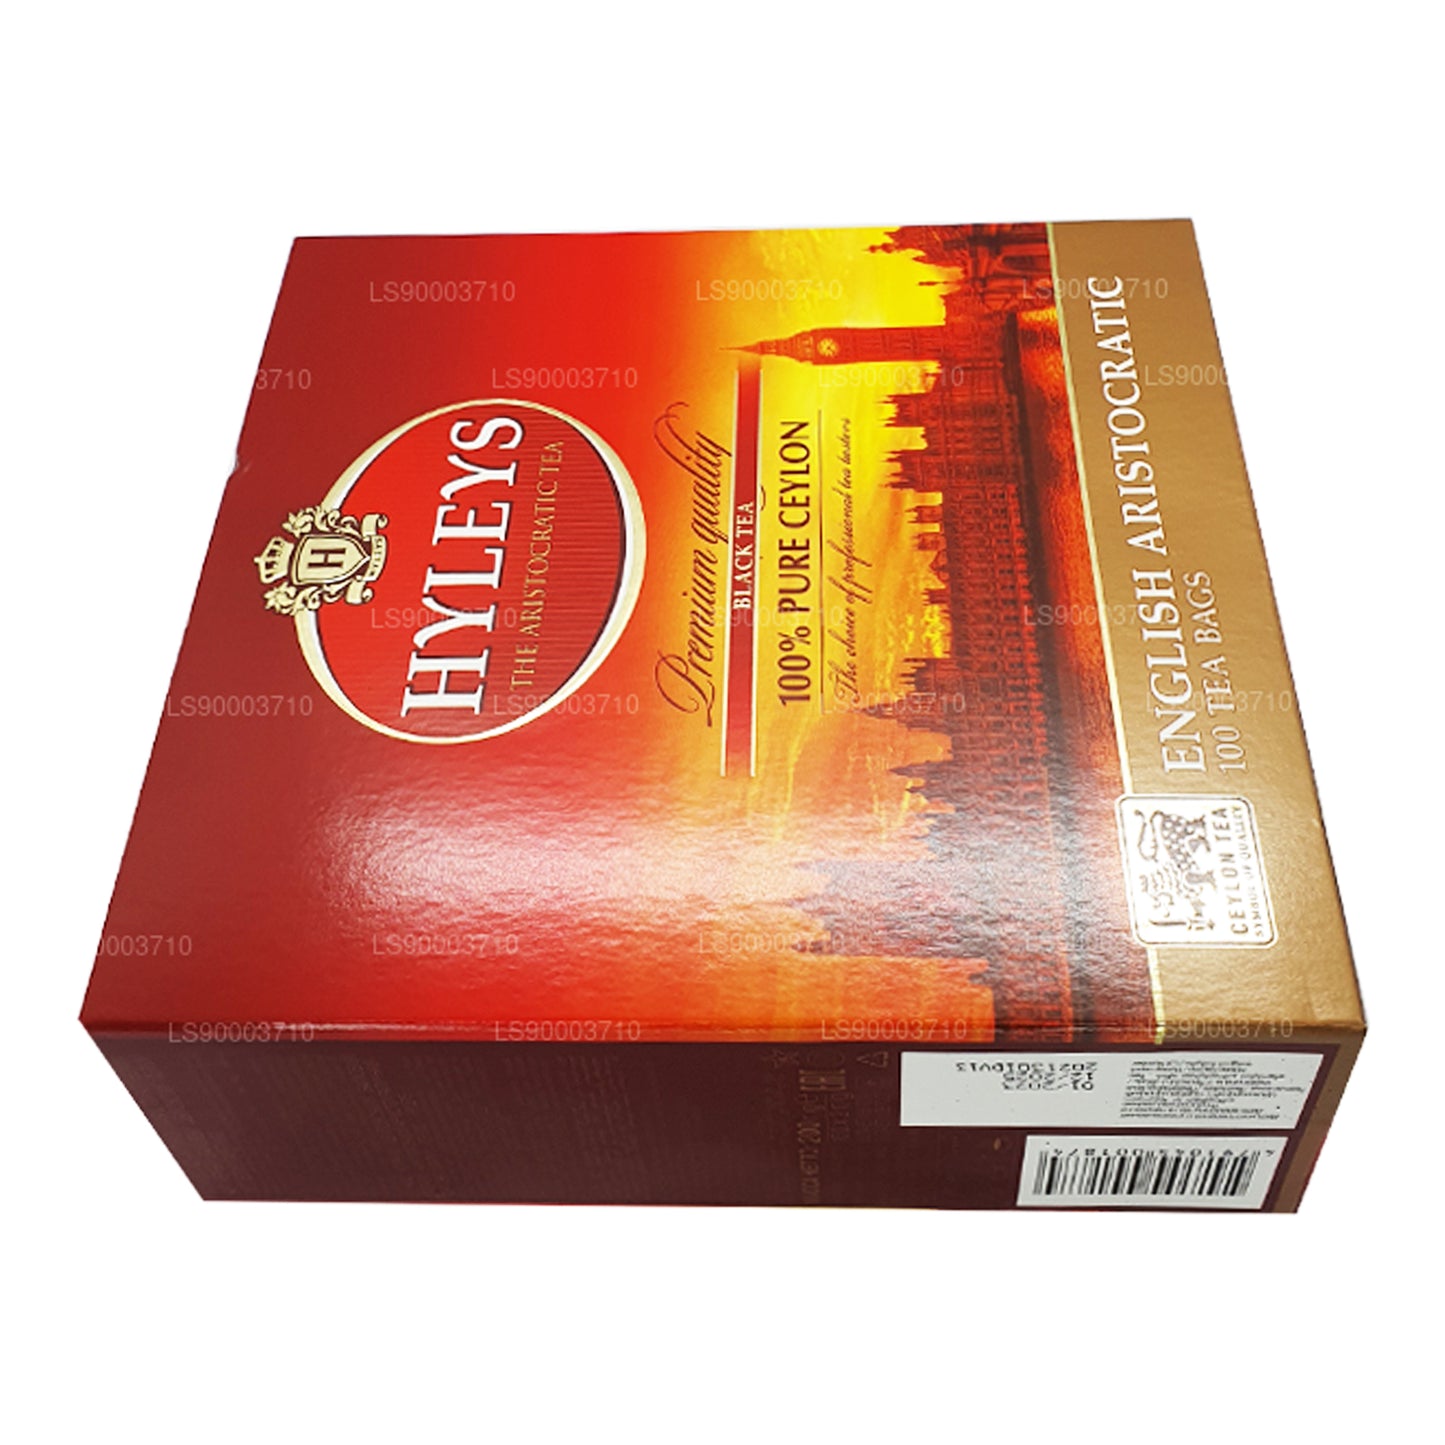 Черный чай высшего качества HYLEYS, 100 пакетиков (200 г)